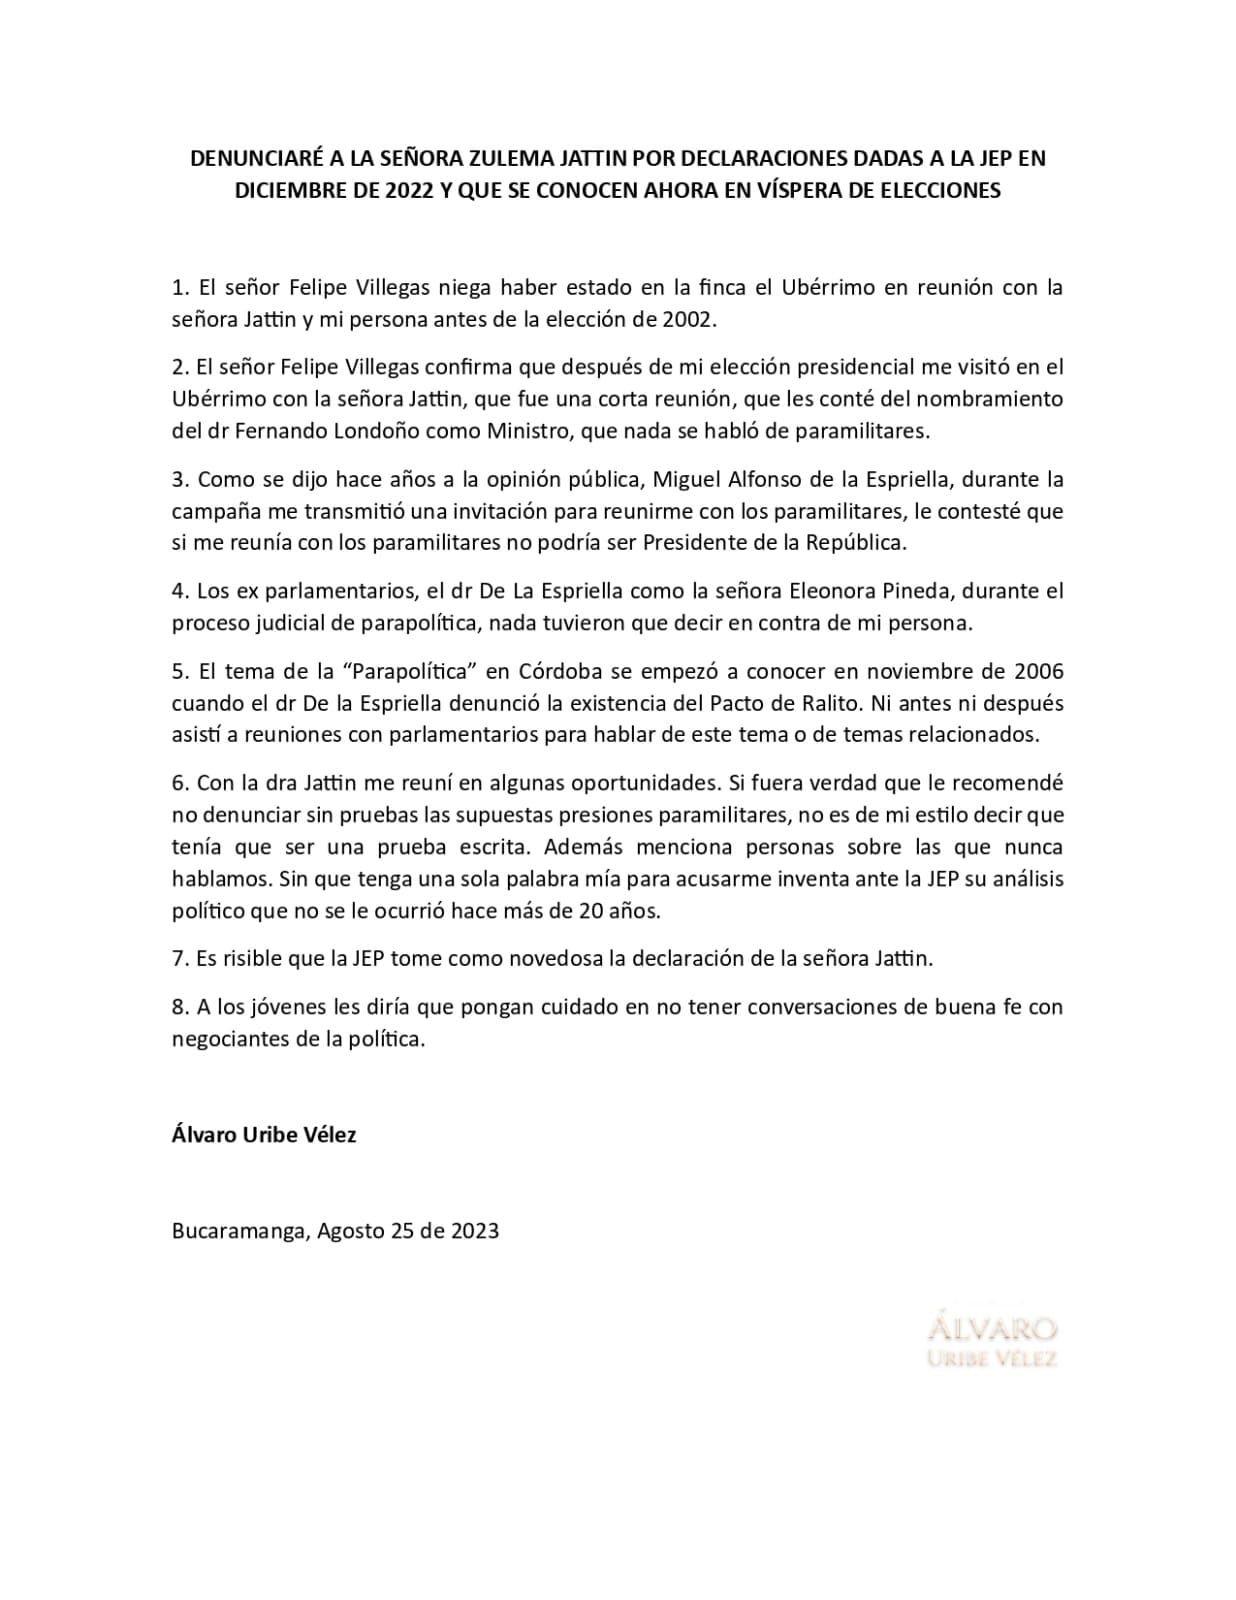 Álvaro Uribe anunció que denunciará a Zulema Jattin por señalamientos hechos ante la JEP.